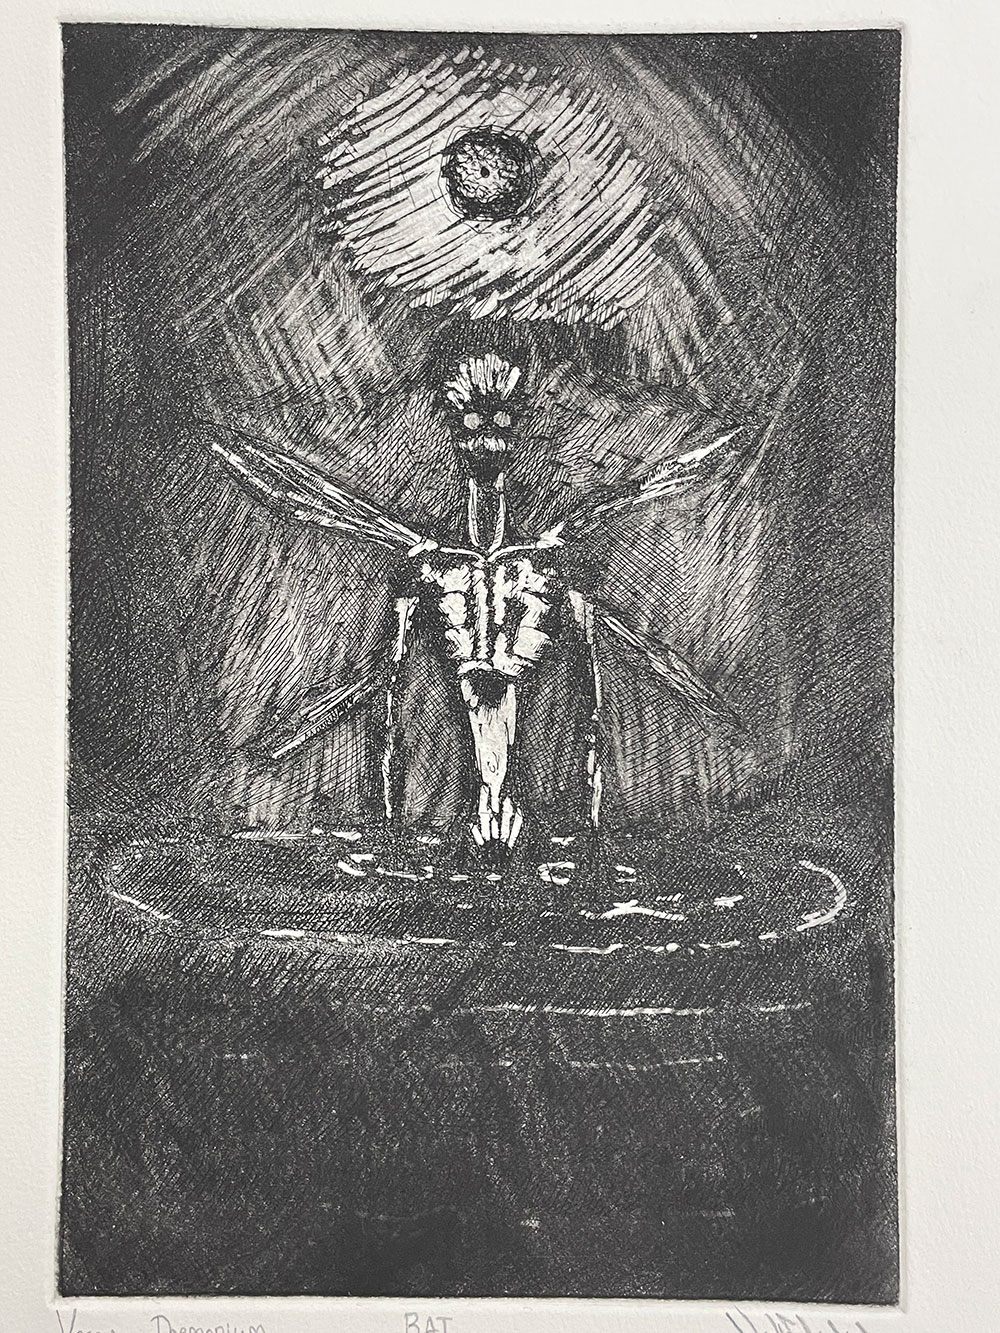 A printed image of a dark skeleton